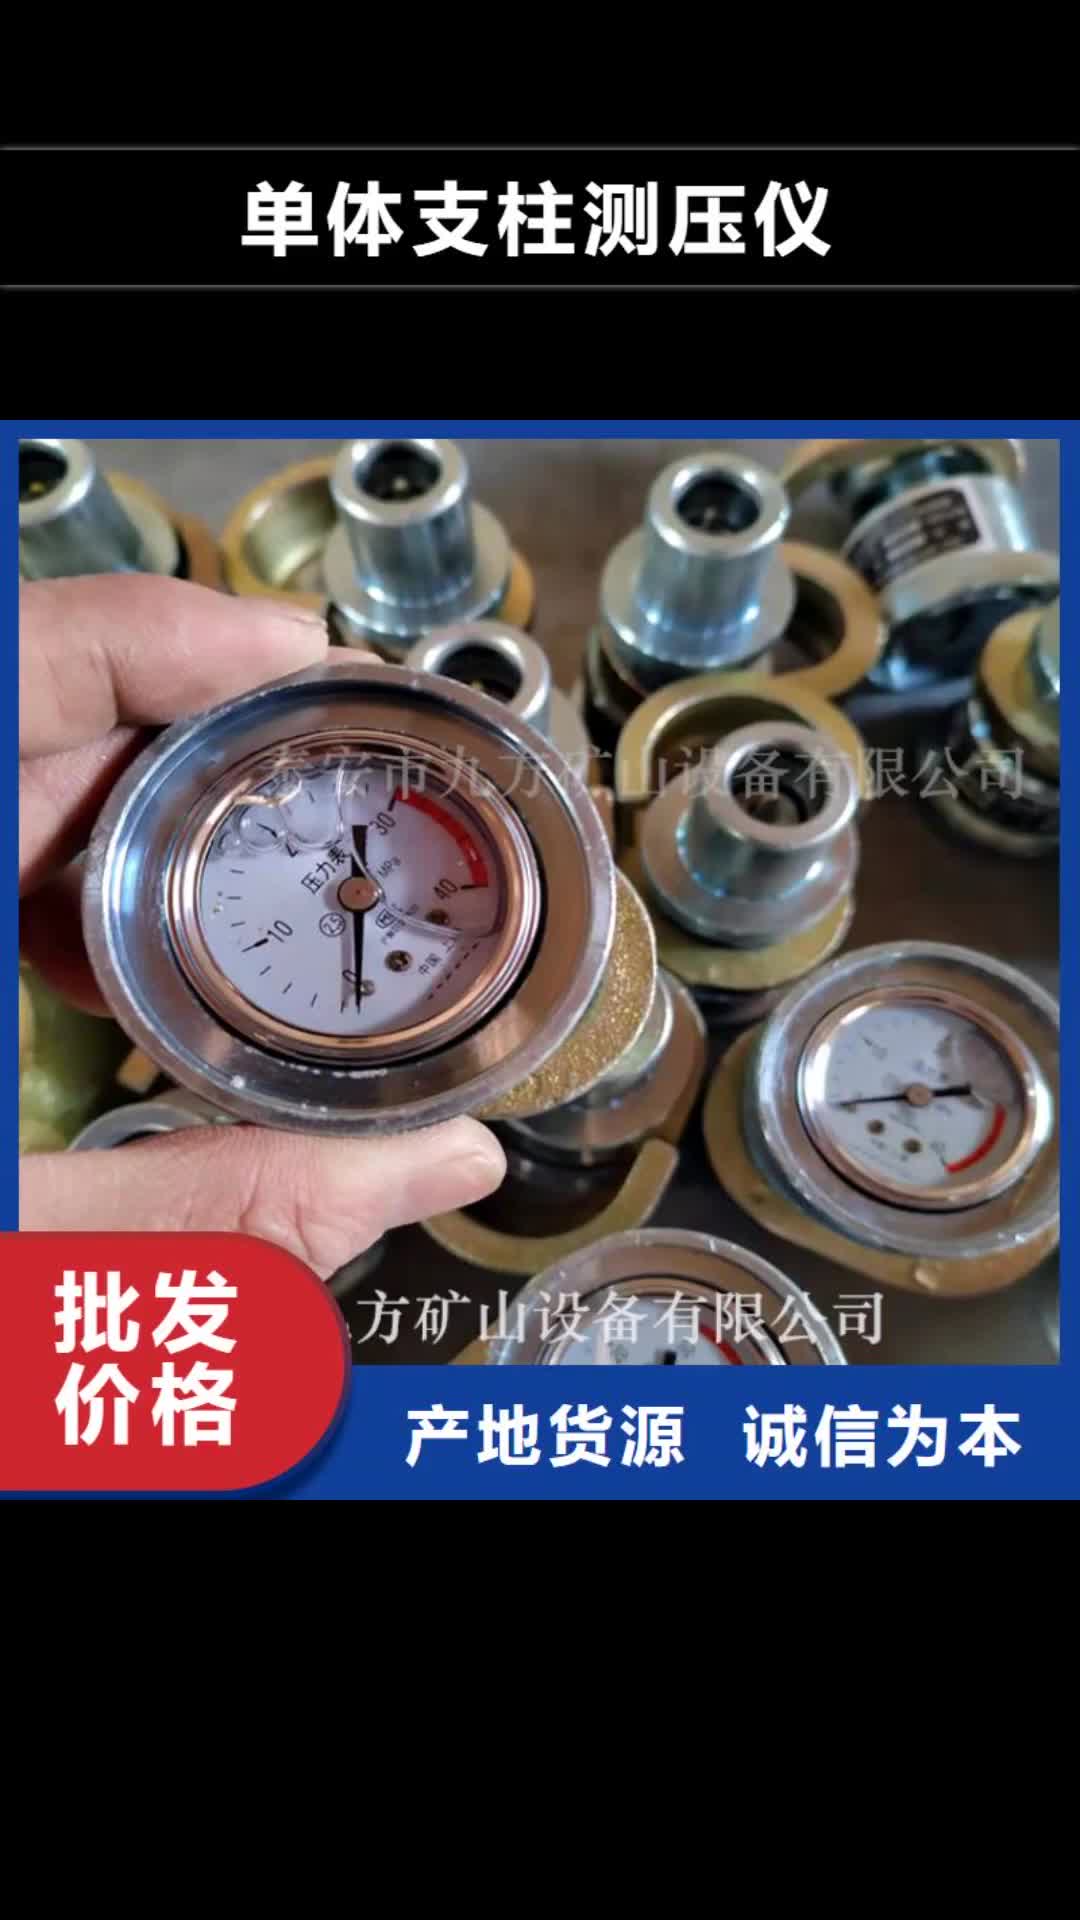 海东【单体支柱测压仪】,煤层注水表精选货源